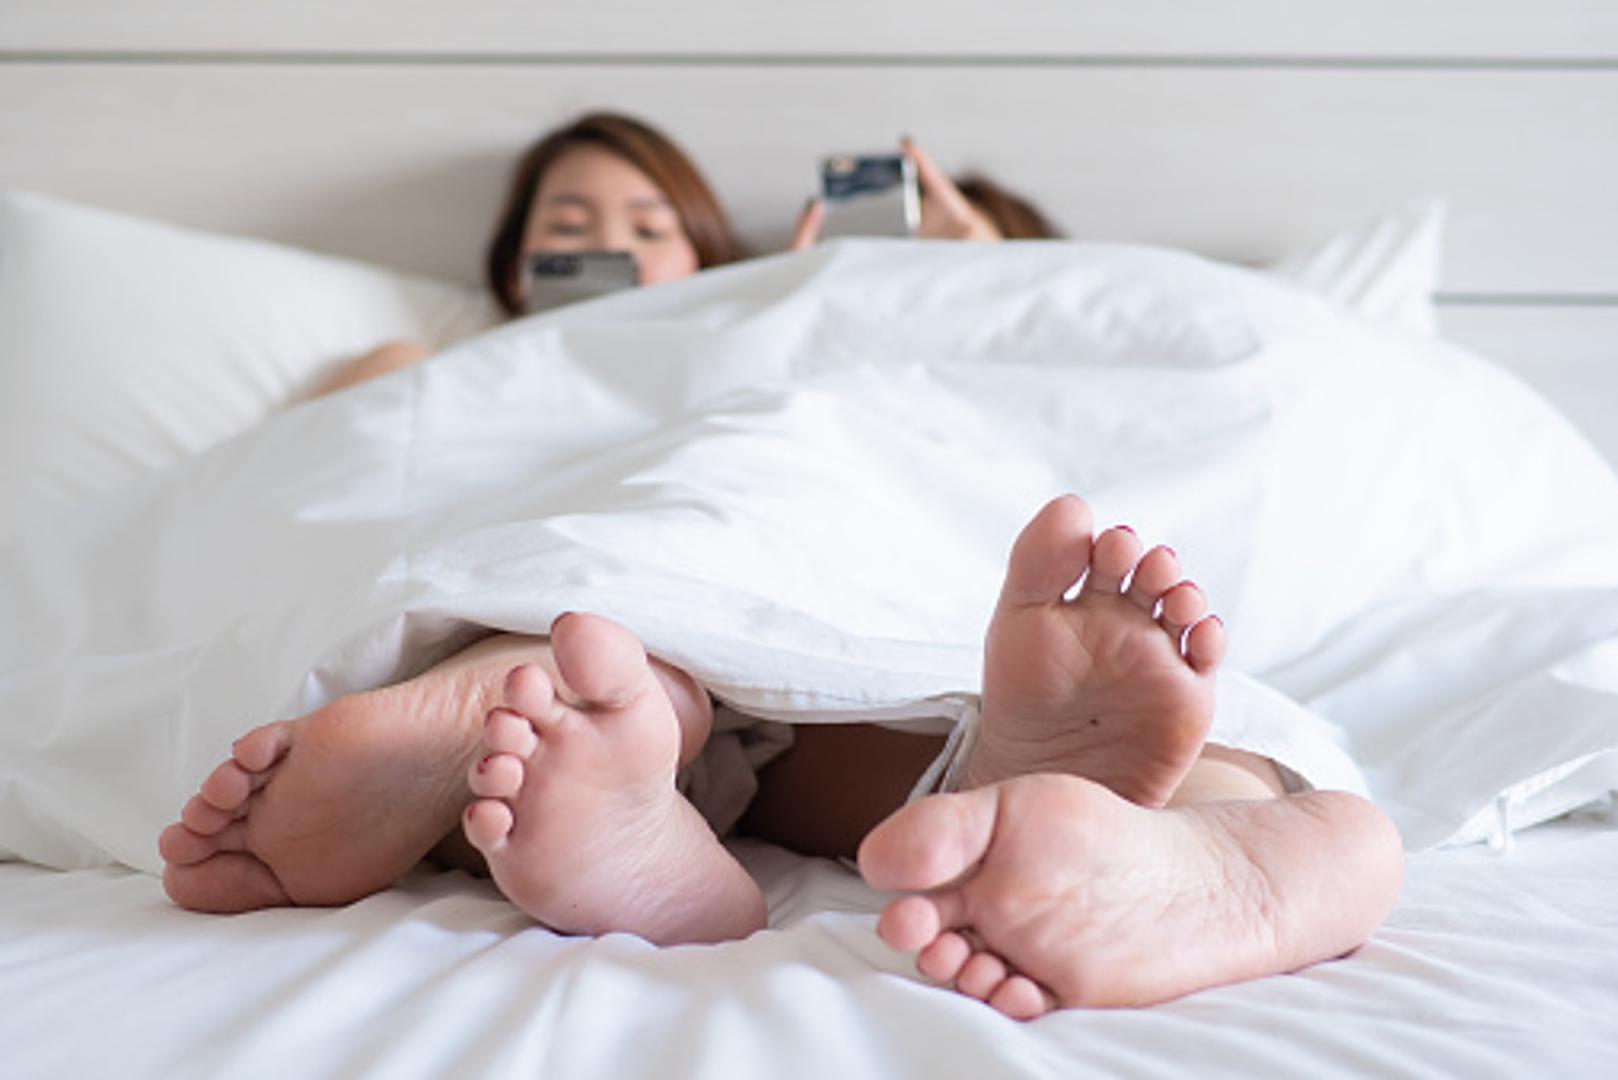 Zaboravite na mobitel dok ste u krevetu s drugom osobom. Isključite zvukove, alarme i jednostavno ignorirajte pametni telefon za vrijeme seksa. Najbolje je mobitel ostaviti u drugoj prostoriji. 